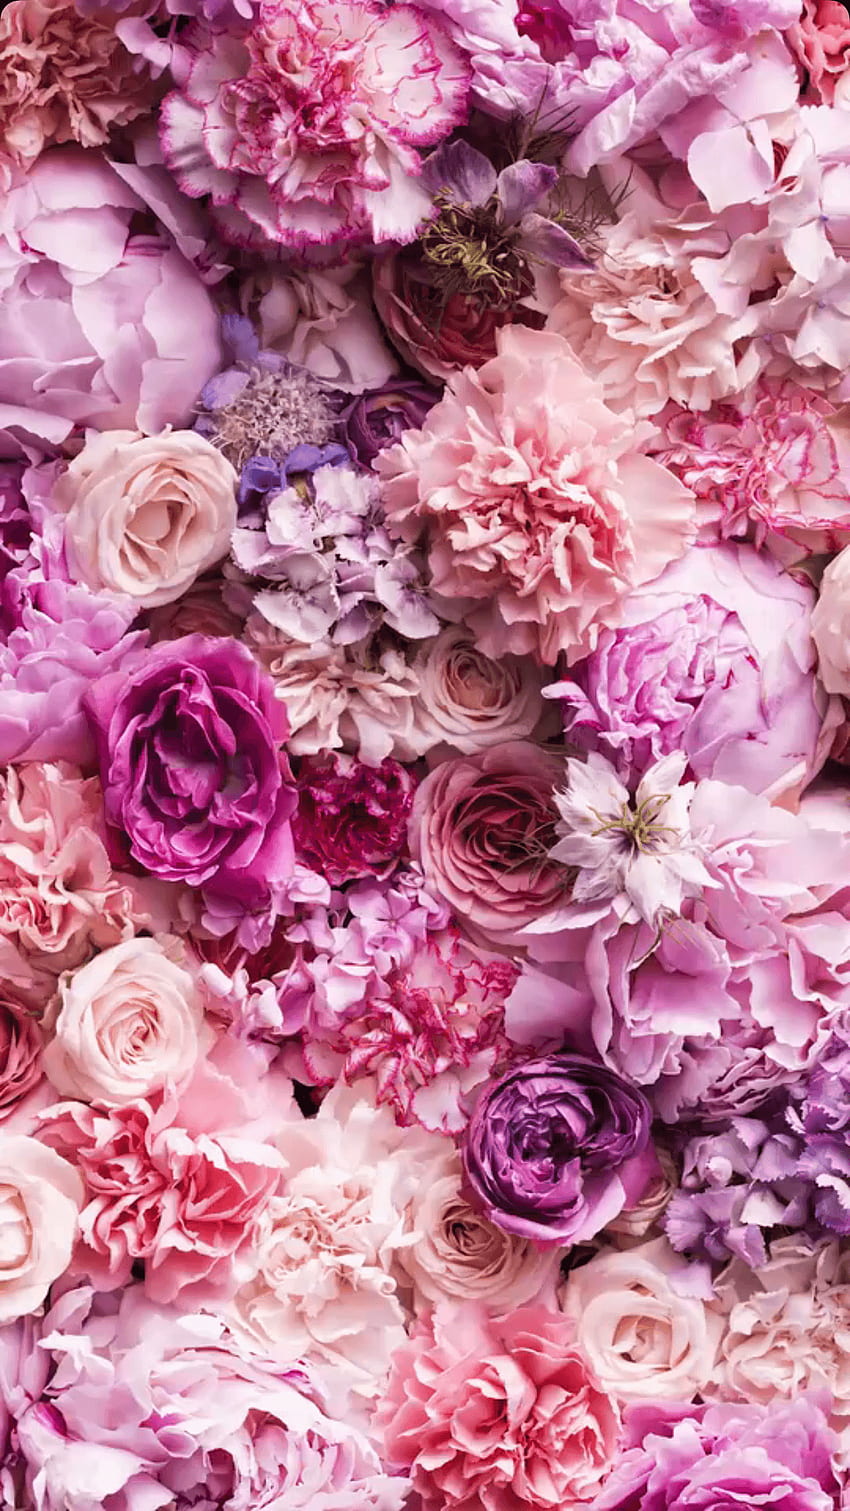 Vintage hoa: Nếu bạn là tín đồ của phong cách vintage, những hình ảnh hoa cổ điển sẽ khiến bạn thực sự say mê. Từ những bông hoa hồng tinh tế đến những cánh hoa đầy uyển chuyển, các hình ảnh này sẽ đưa bạn trở lại thập niên 50 và 60, khi những đóa hoa được coi là biểu tượng của sự sang trọng và tinh tế.